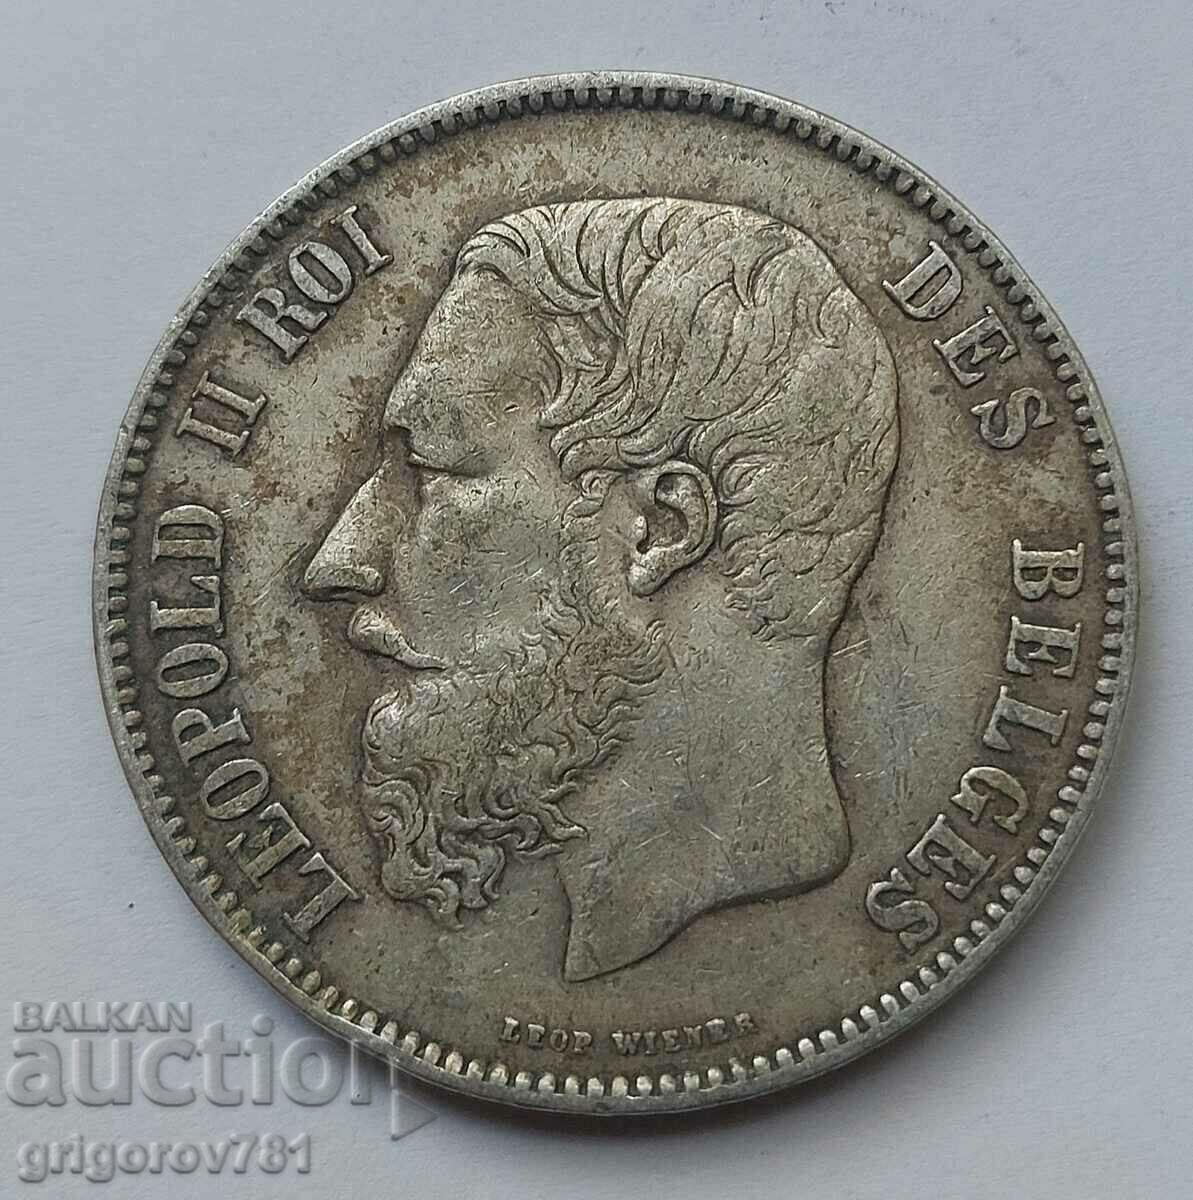 5 Francs Silver Belgium 1870 Silver Coin #171